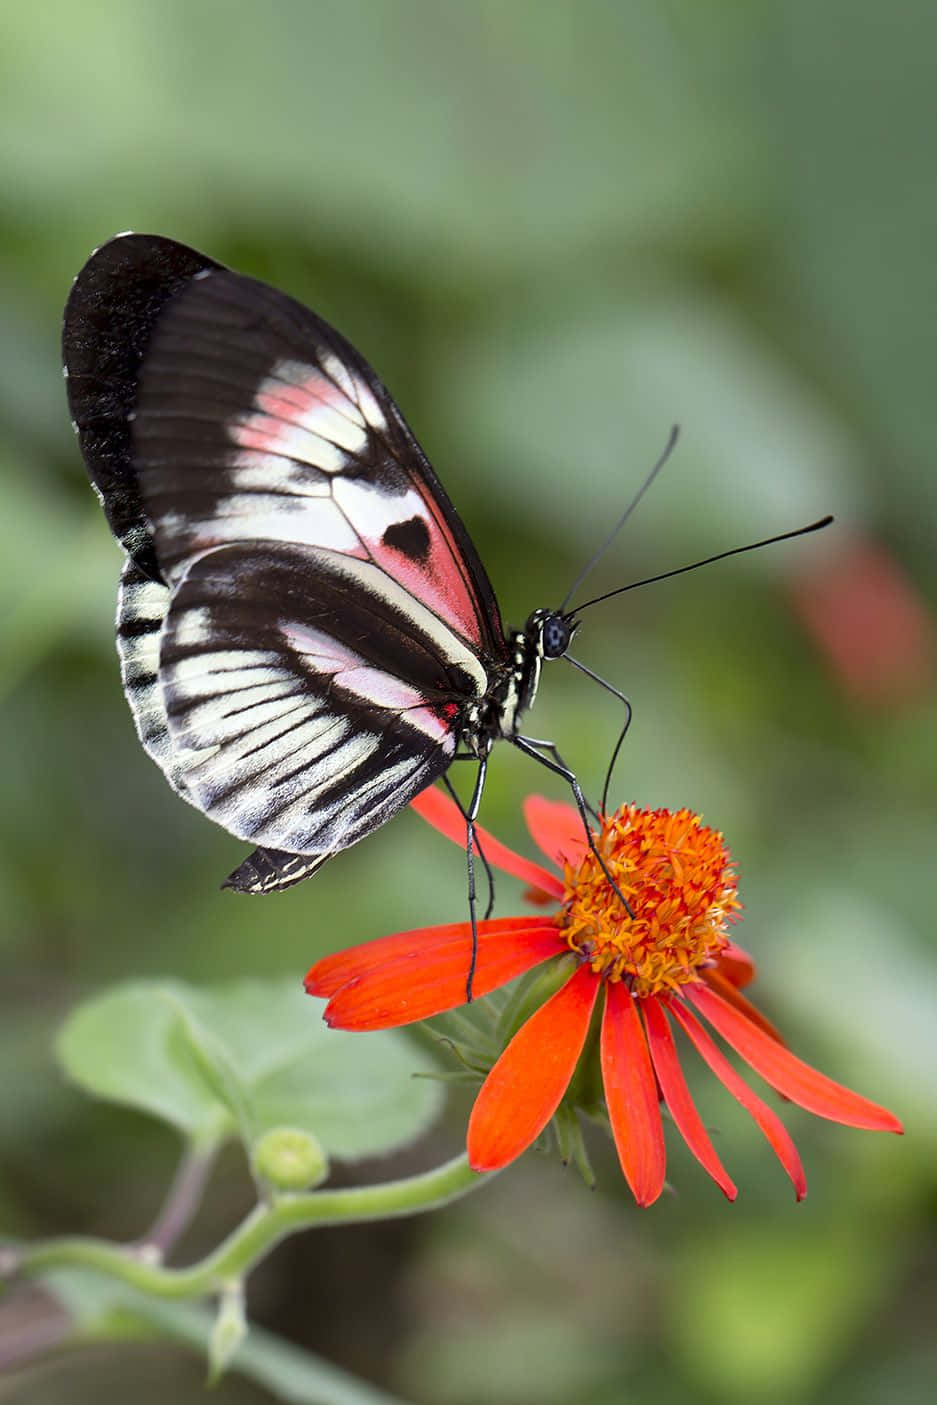 Butterfly on a flower in full bloom